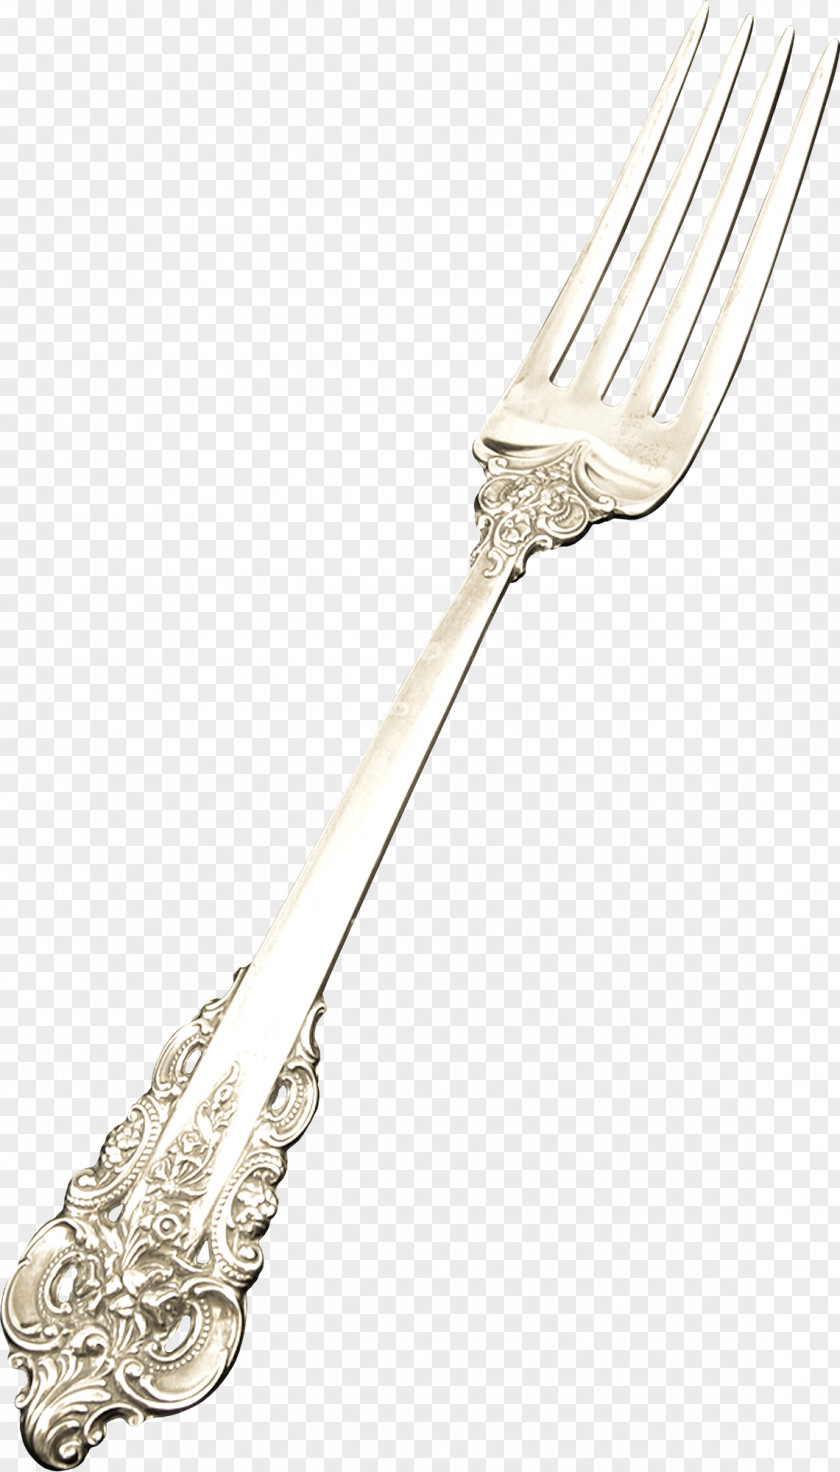 Fork Cutlery Tableware Gratis PNG